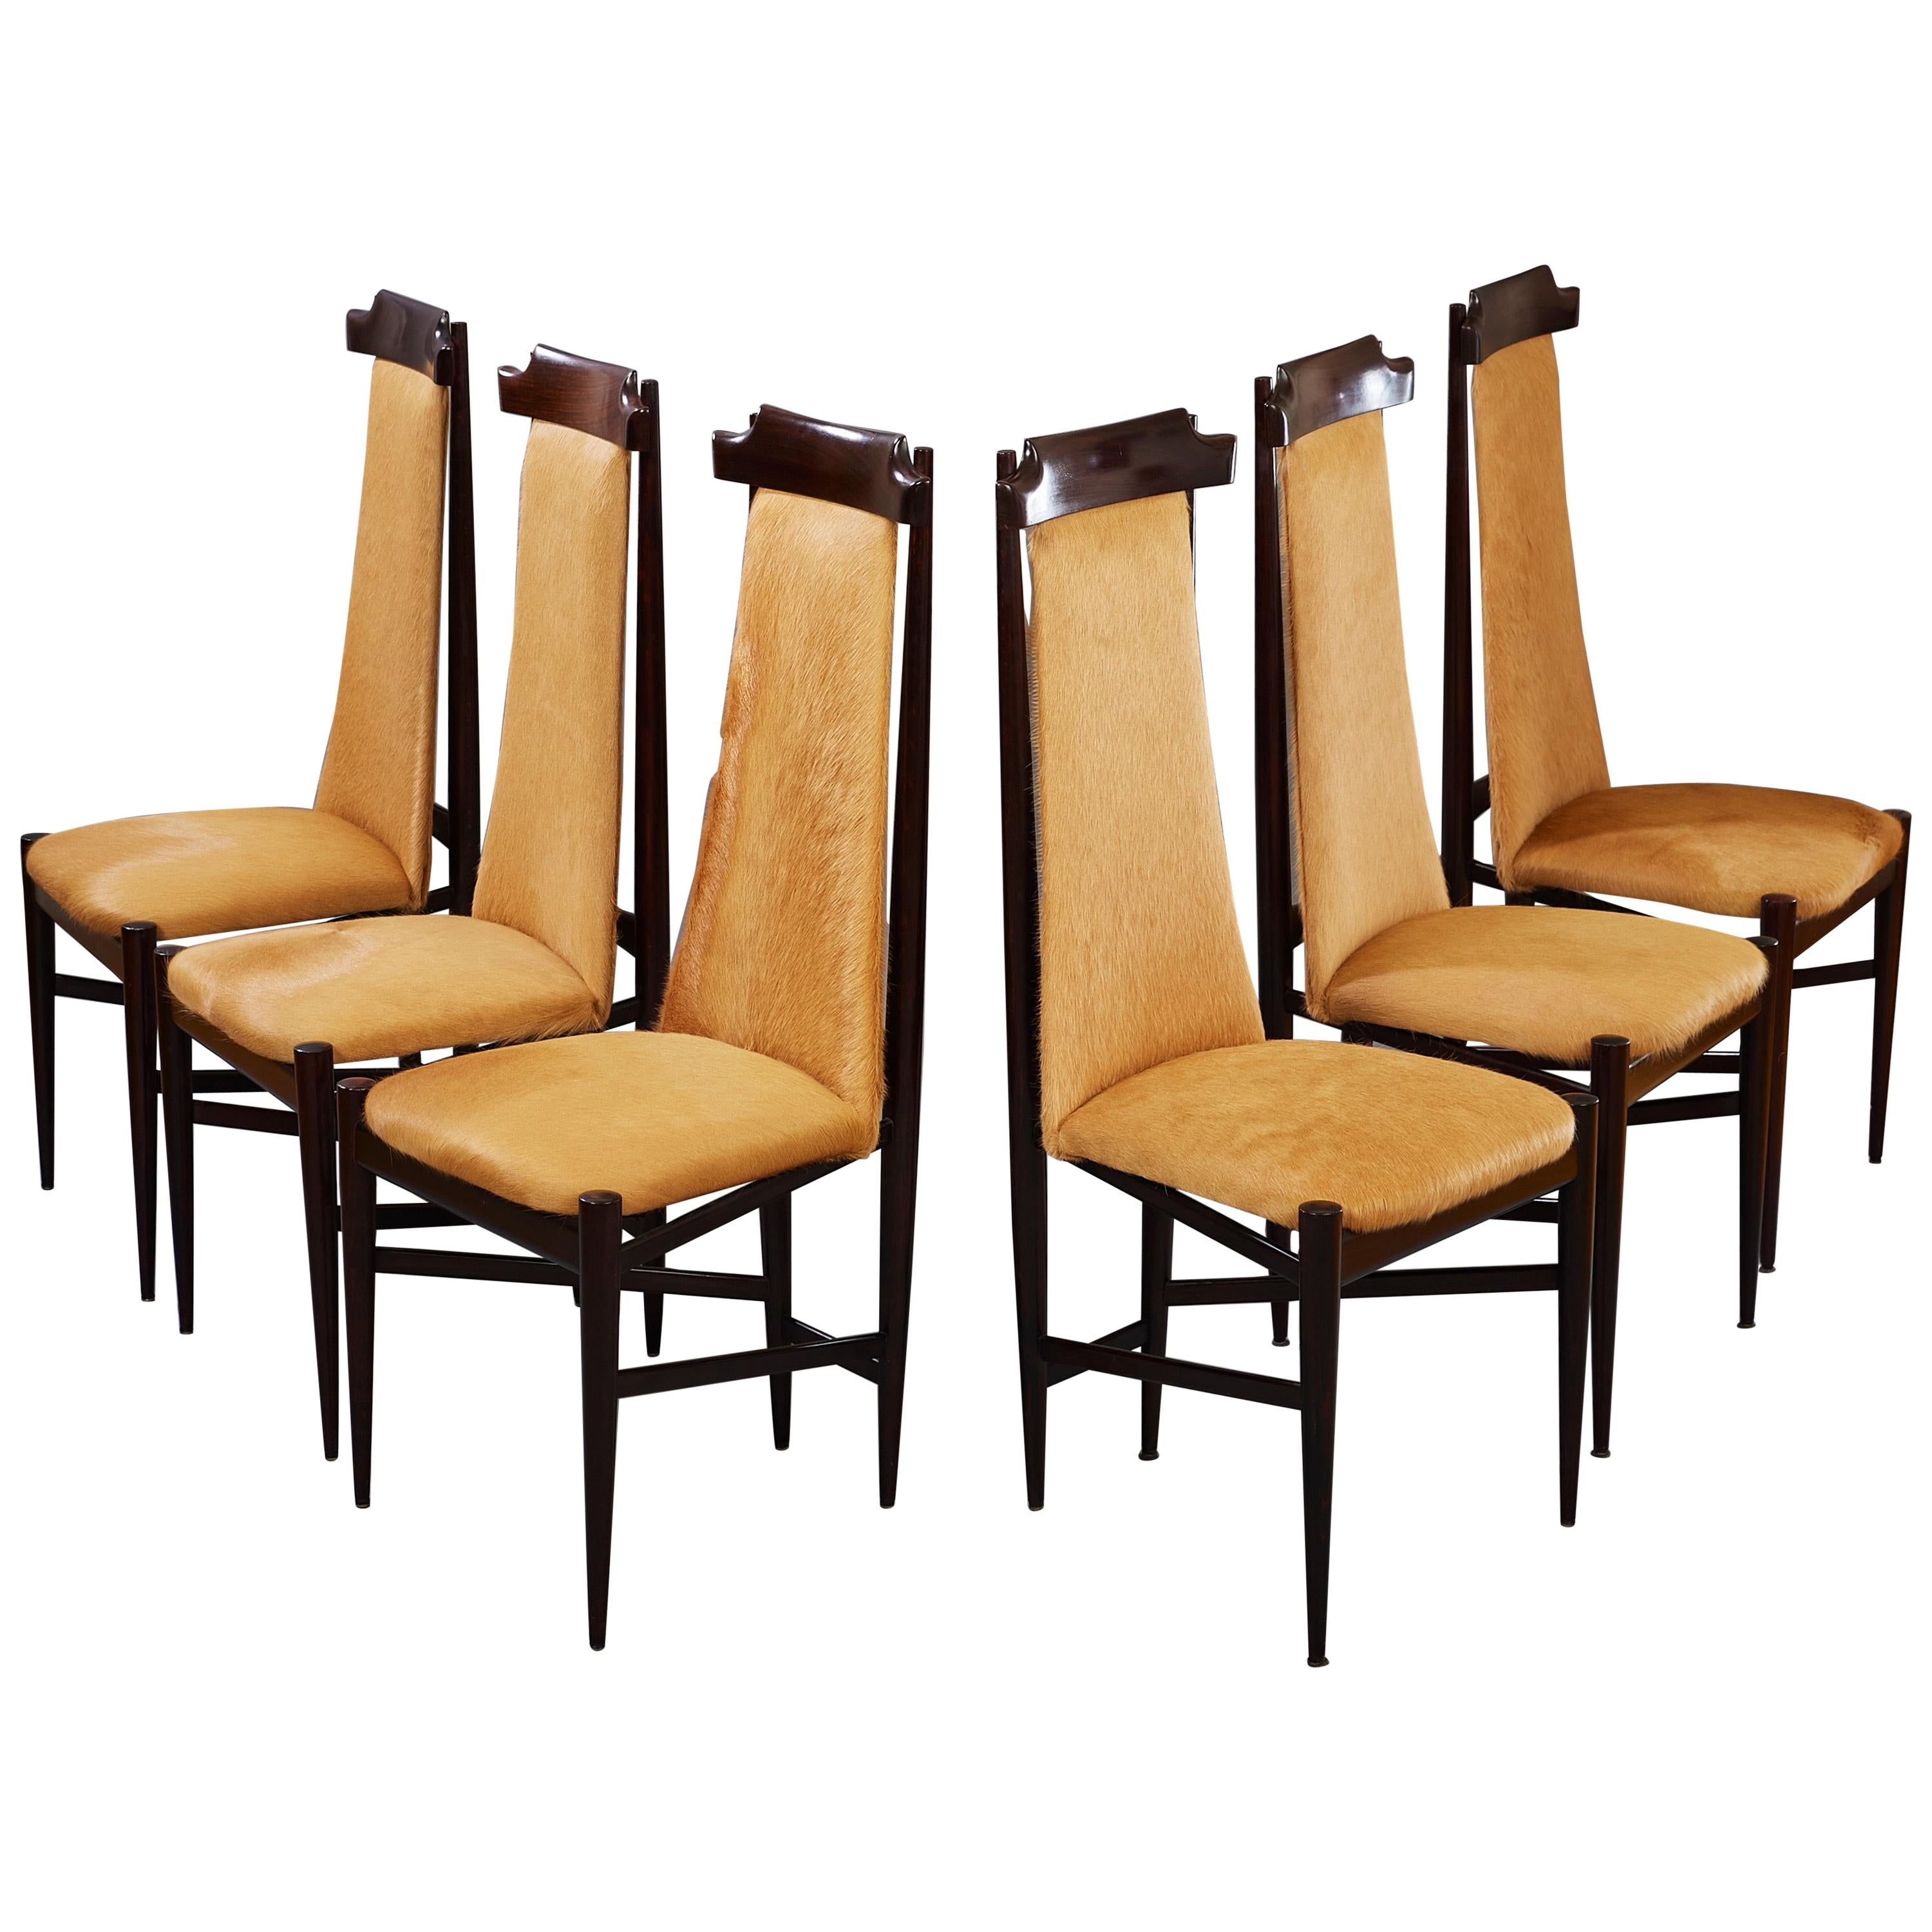 Sechs Esszimmerstühle aus Holz und braunem Rindsleder von Sergio Rodrigues, Brasilien, 1960er Jahre